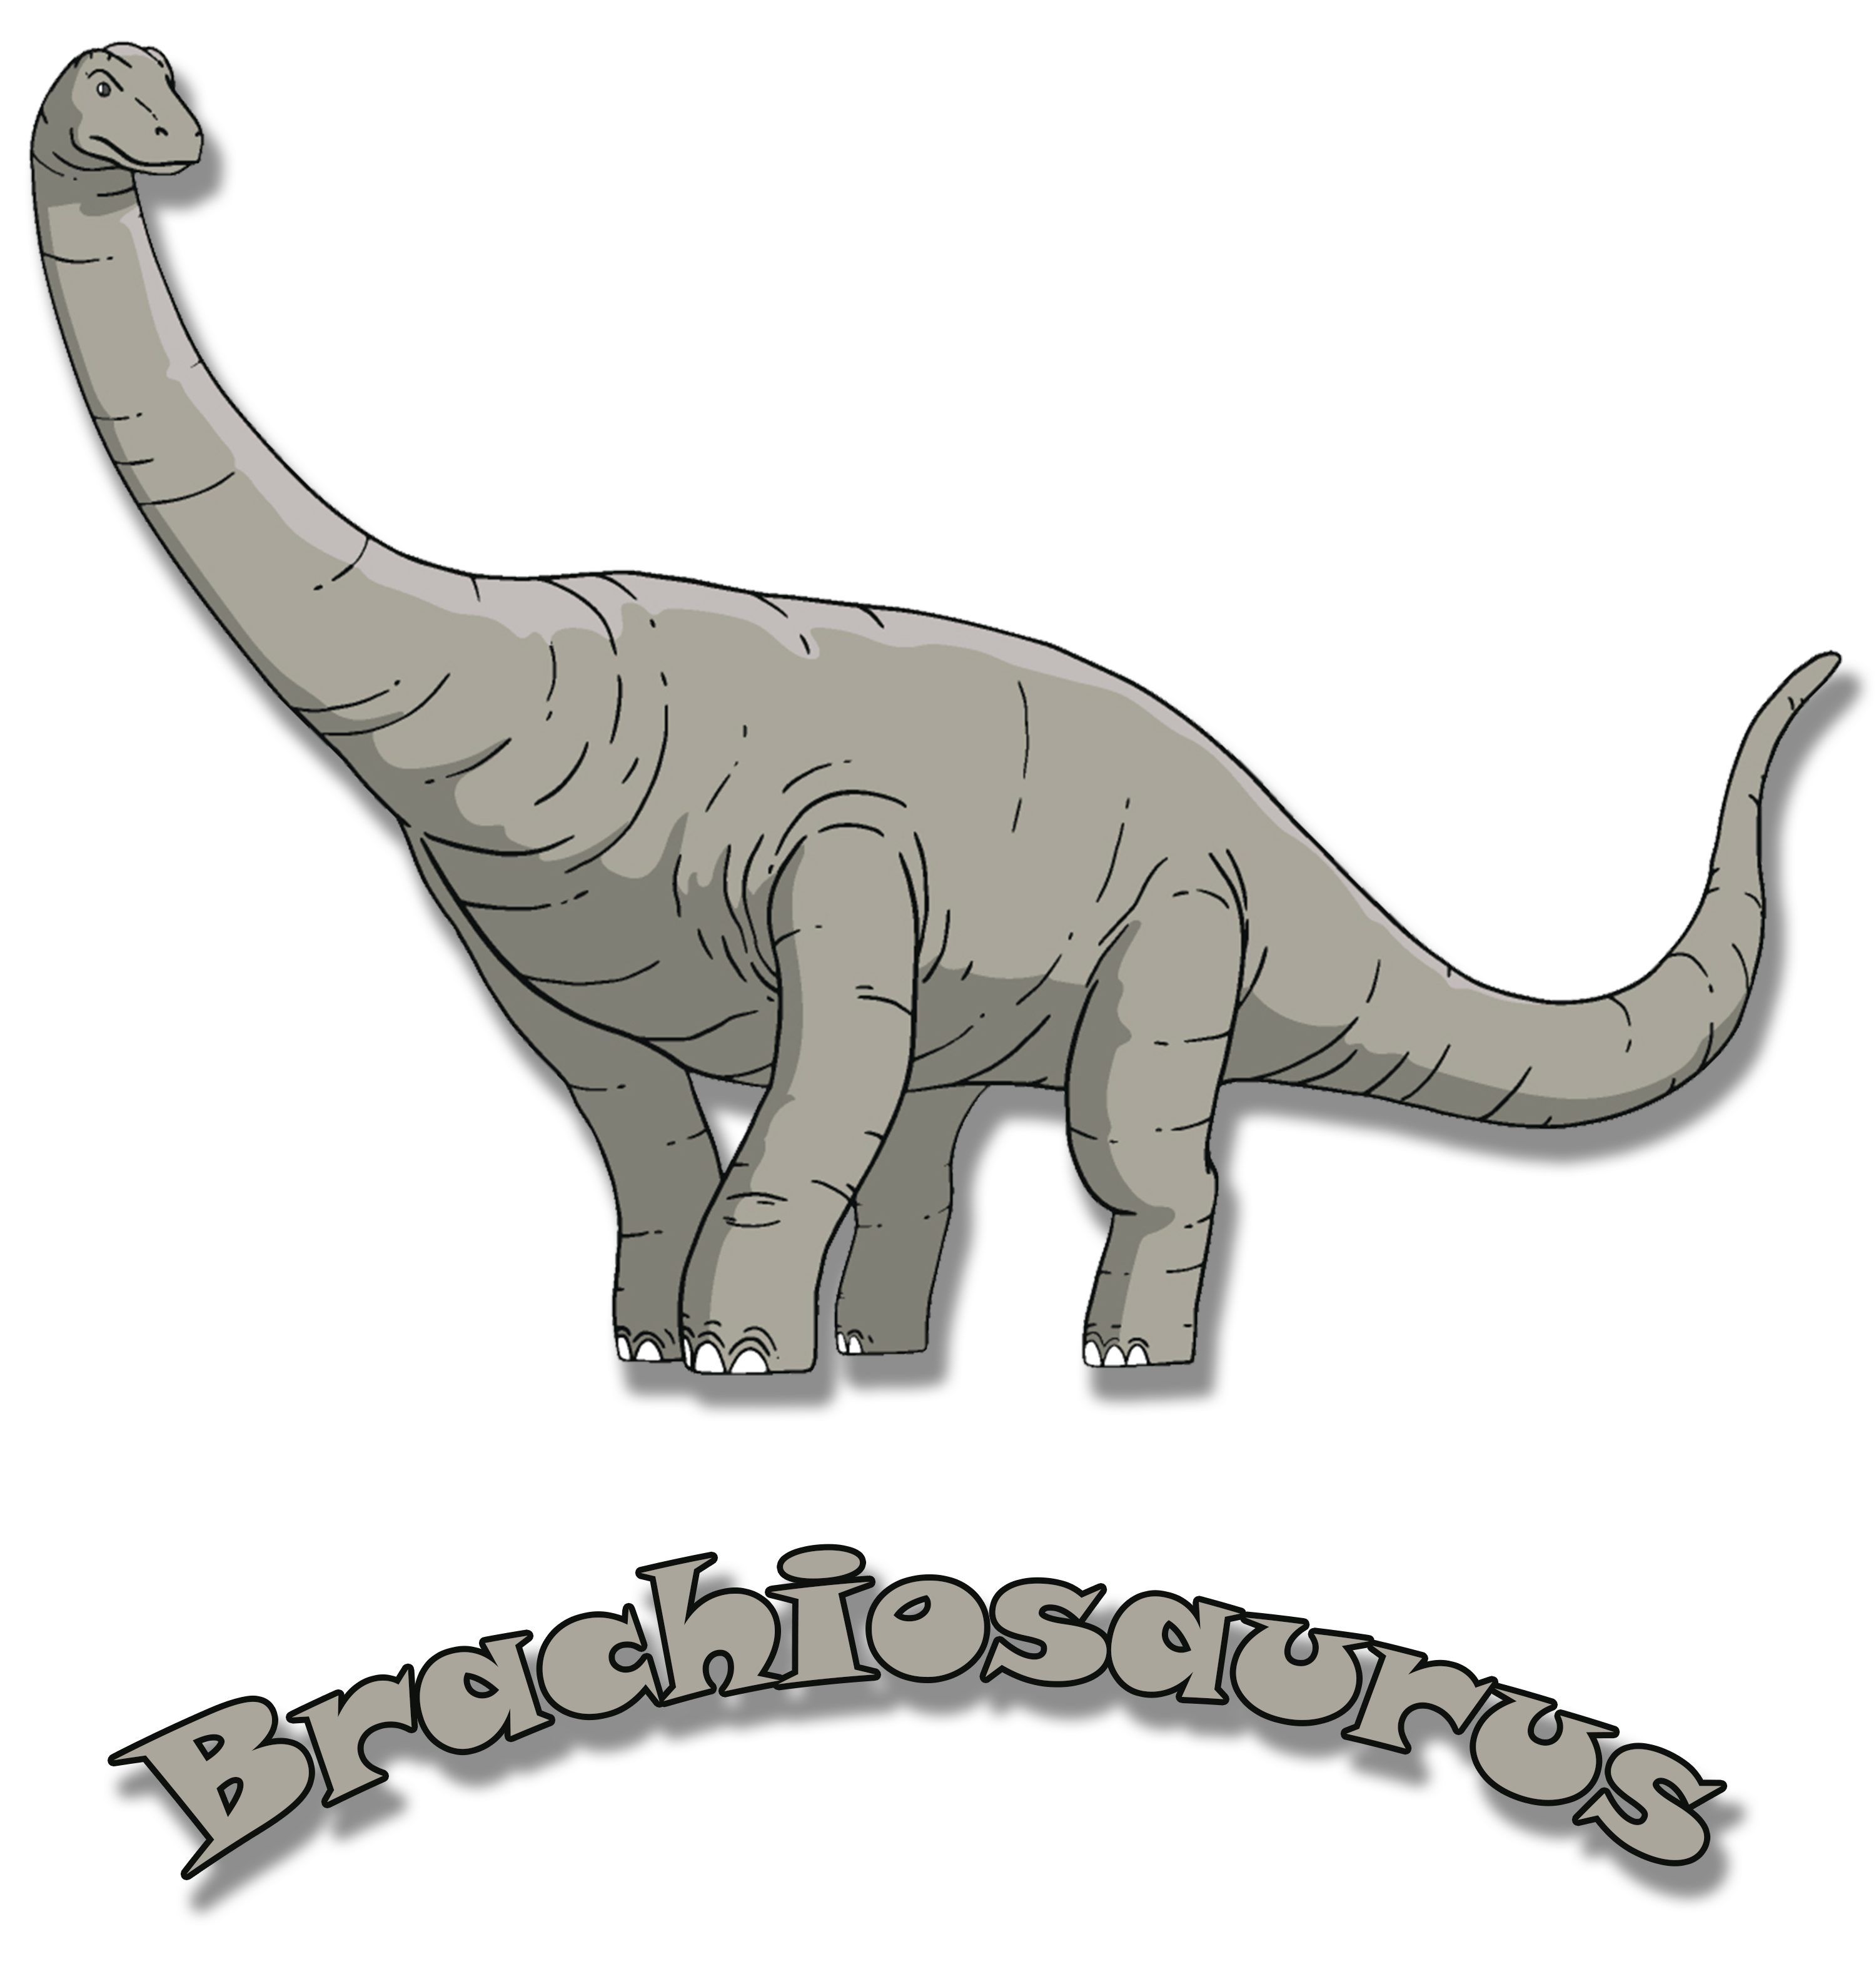 blau, mit T-Shirt Dino, schwarz, i66 rot, weiß, Kinder Brachiosaurus bedrucktes Baumwollshirt mit Print-Shirt MyDesign24